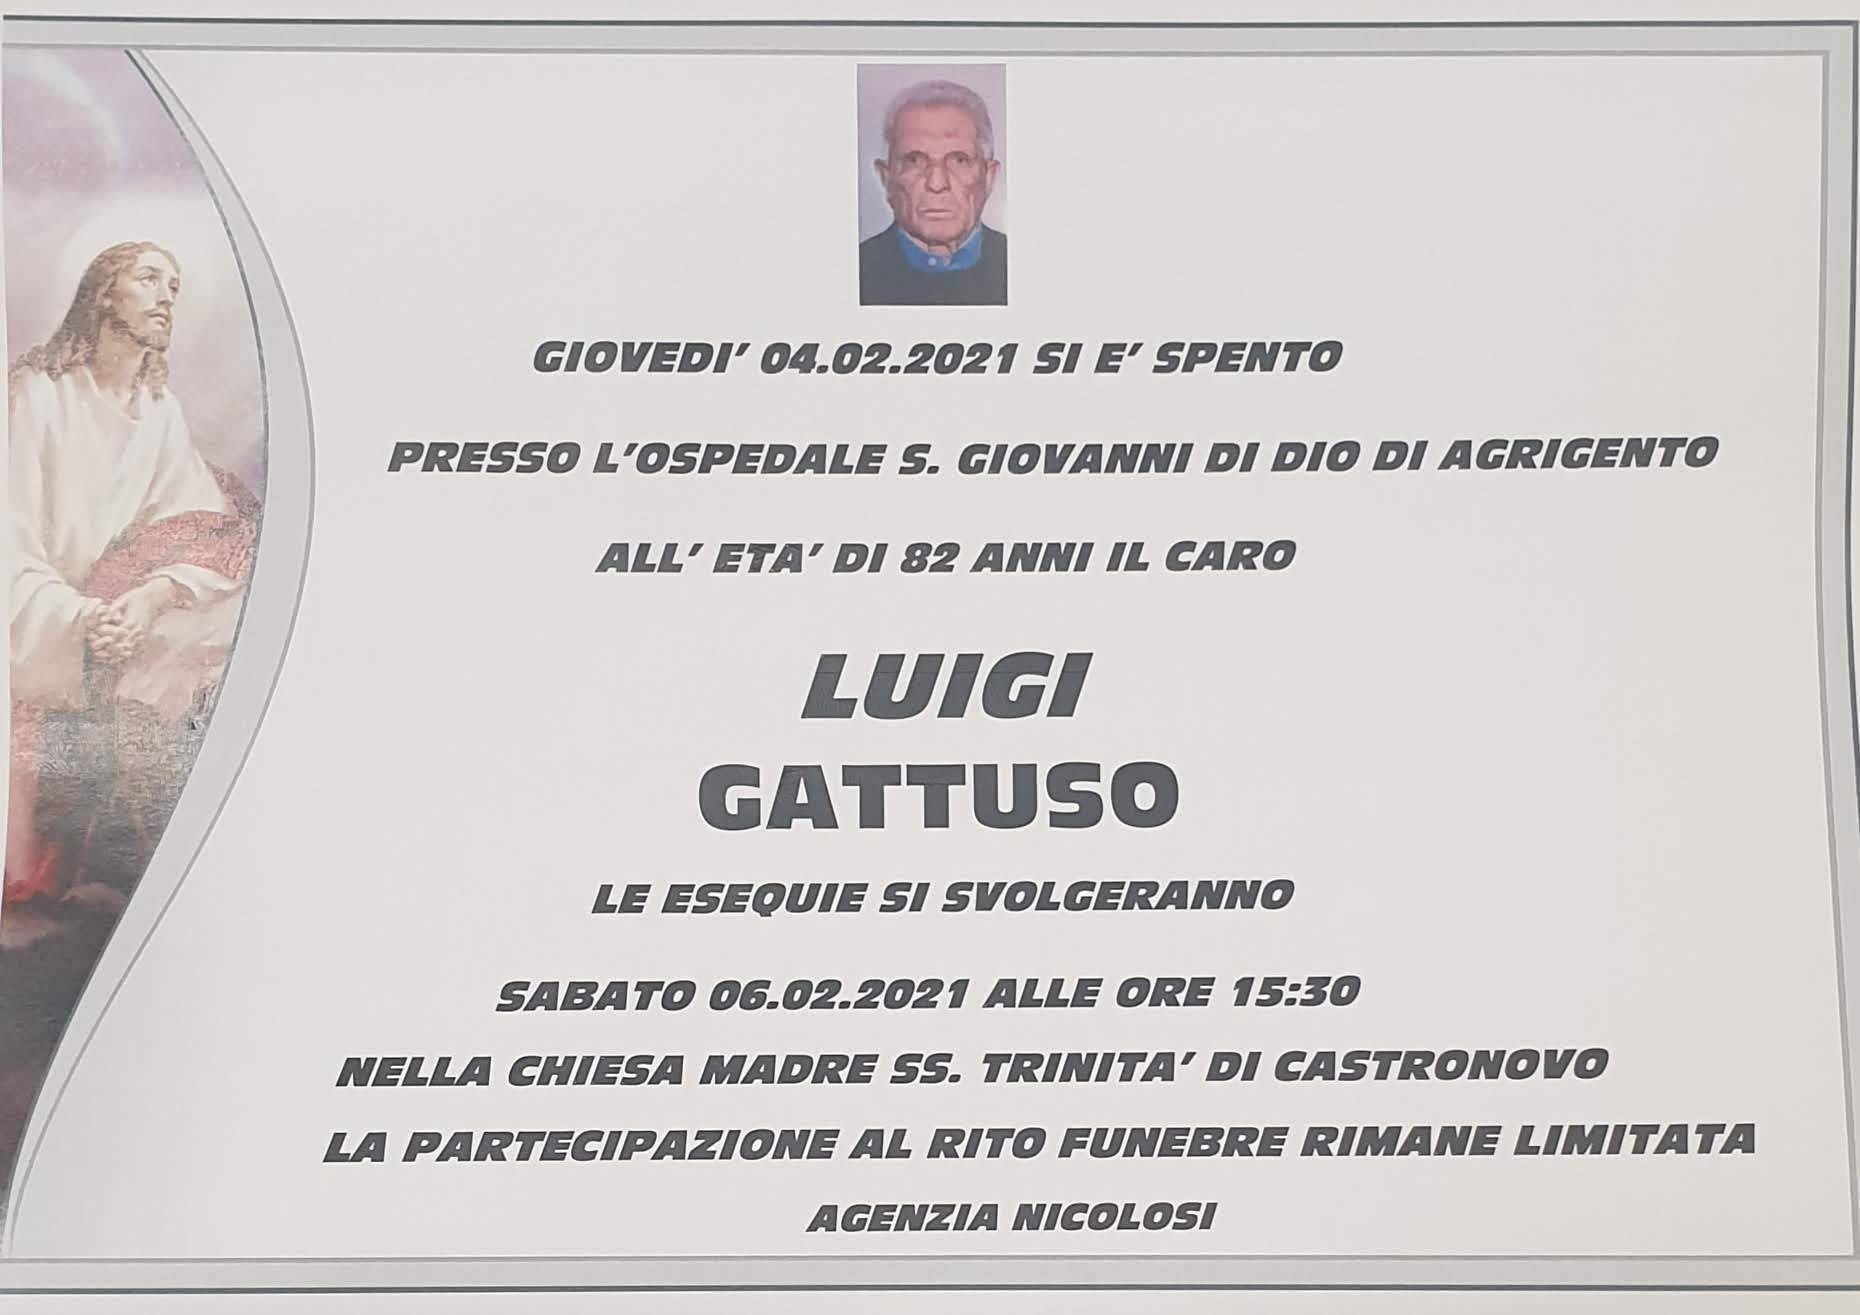 Luigi Gattuso